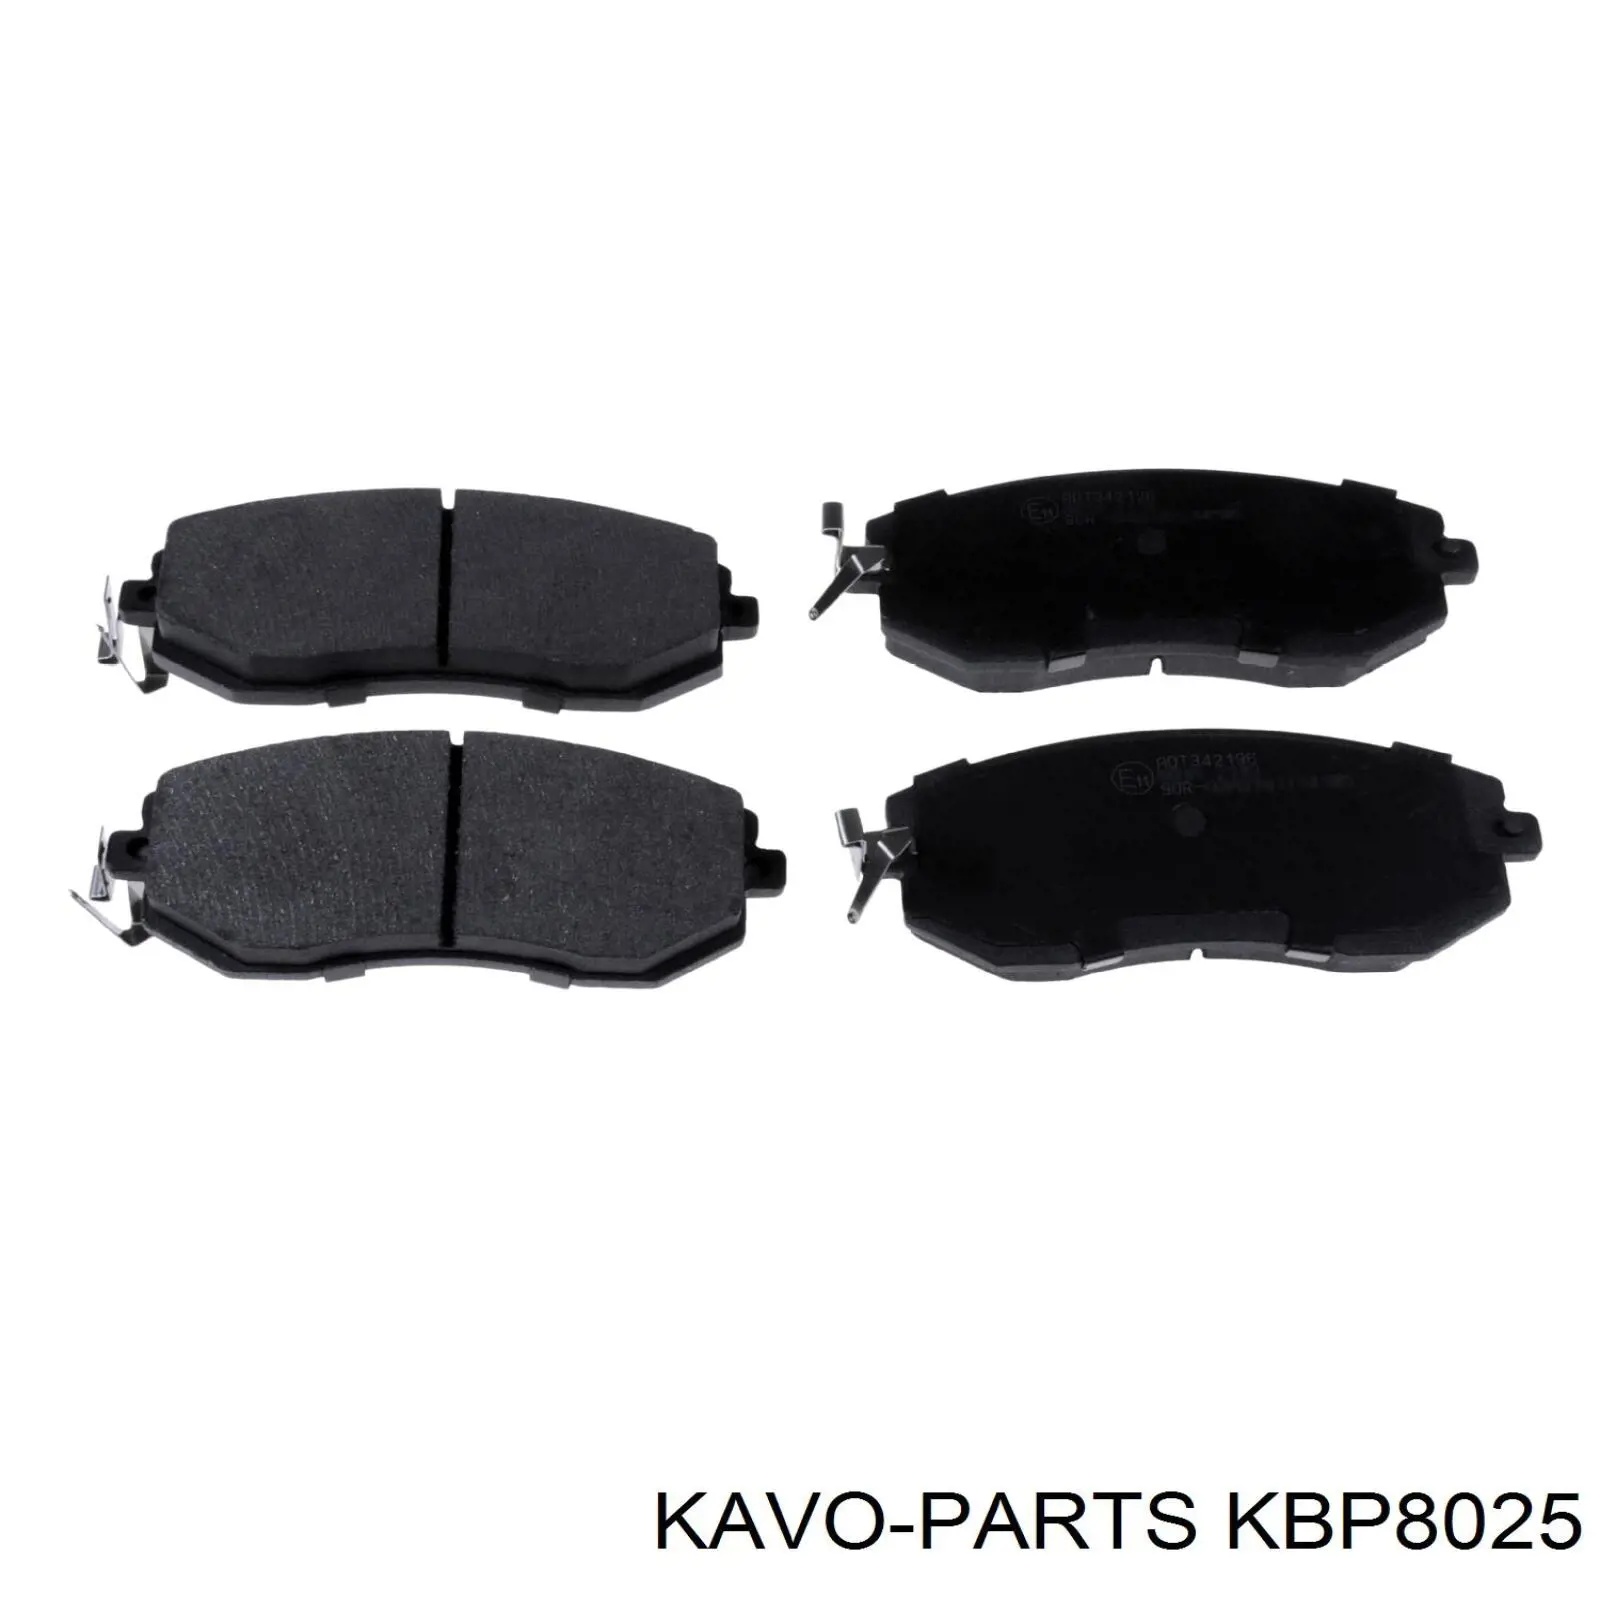 KBP-8025 Kavo Parts pastillas de freno delanteras